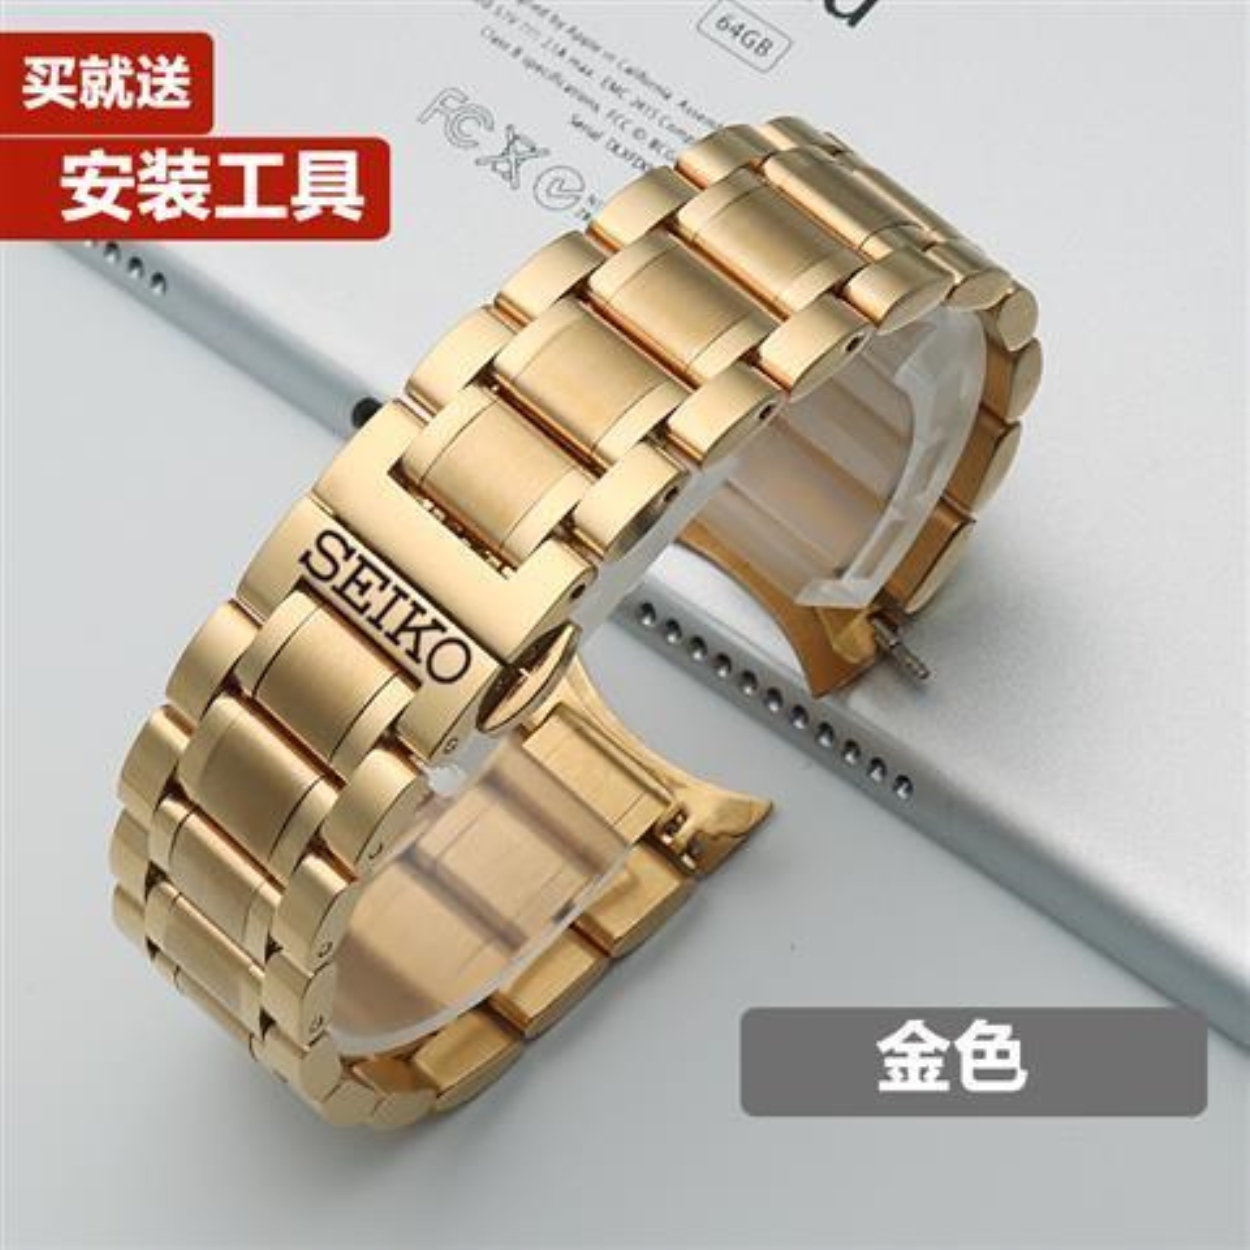 Original Dây đeo đồng hồ Seiko 5 Dây đeo bằng thép Đồng hồ nam cơ Seiko 5 Dây đeo bằng thép SNKP09K1 SNKM85J1 Dây đeo đồng hồ